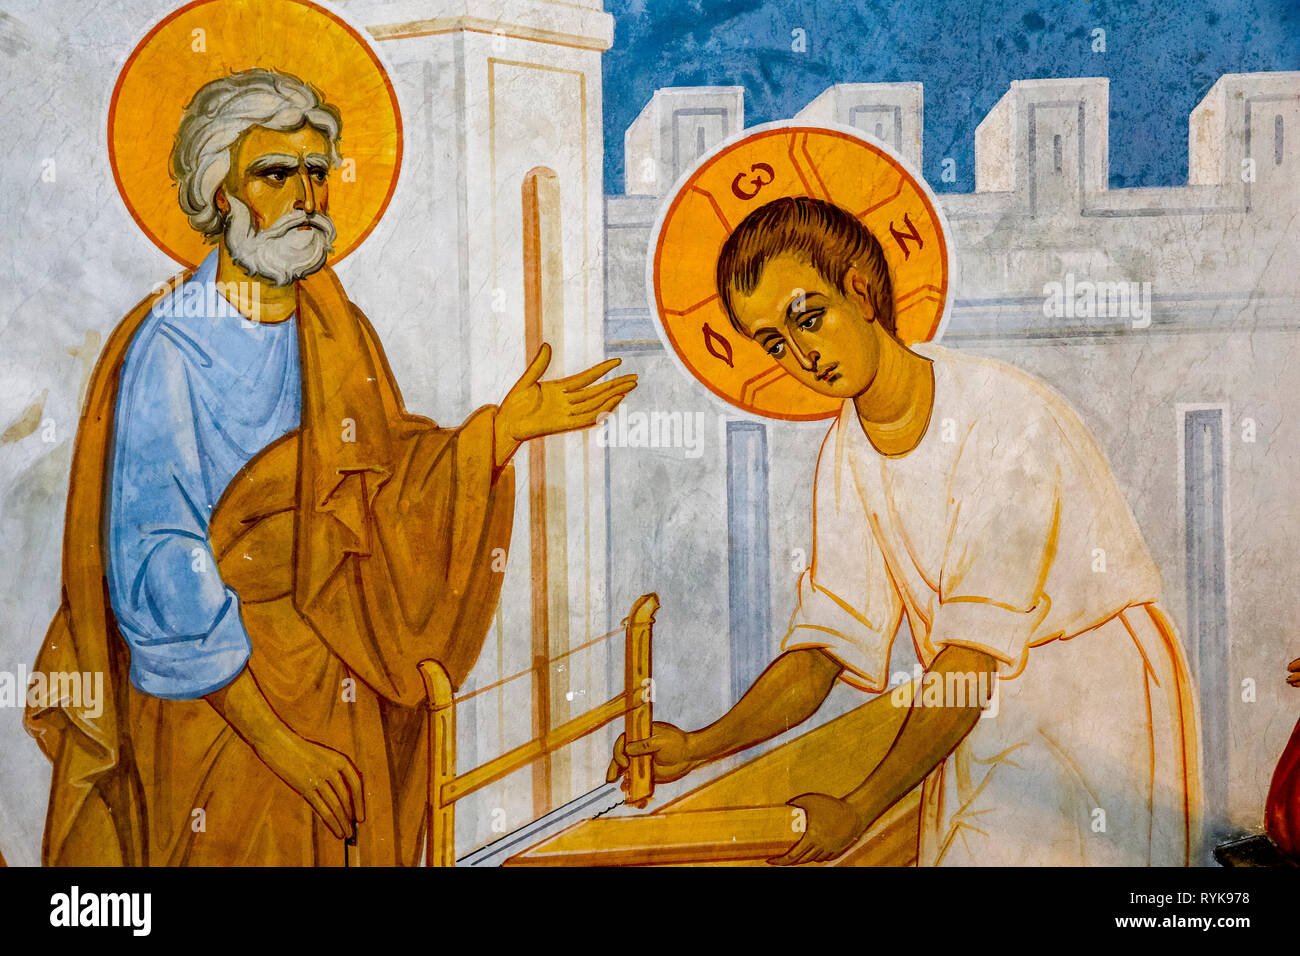 Détail d'une fresque dans l'église grecque orthodoxe de l'Annonciation, à Nazareth, Israël. Jésus à St Joseph's atelier de menuiserie. Banque D'Images